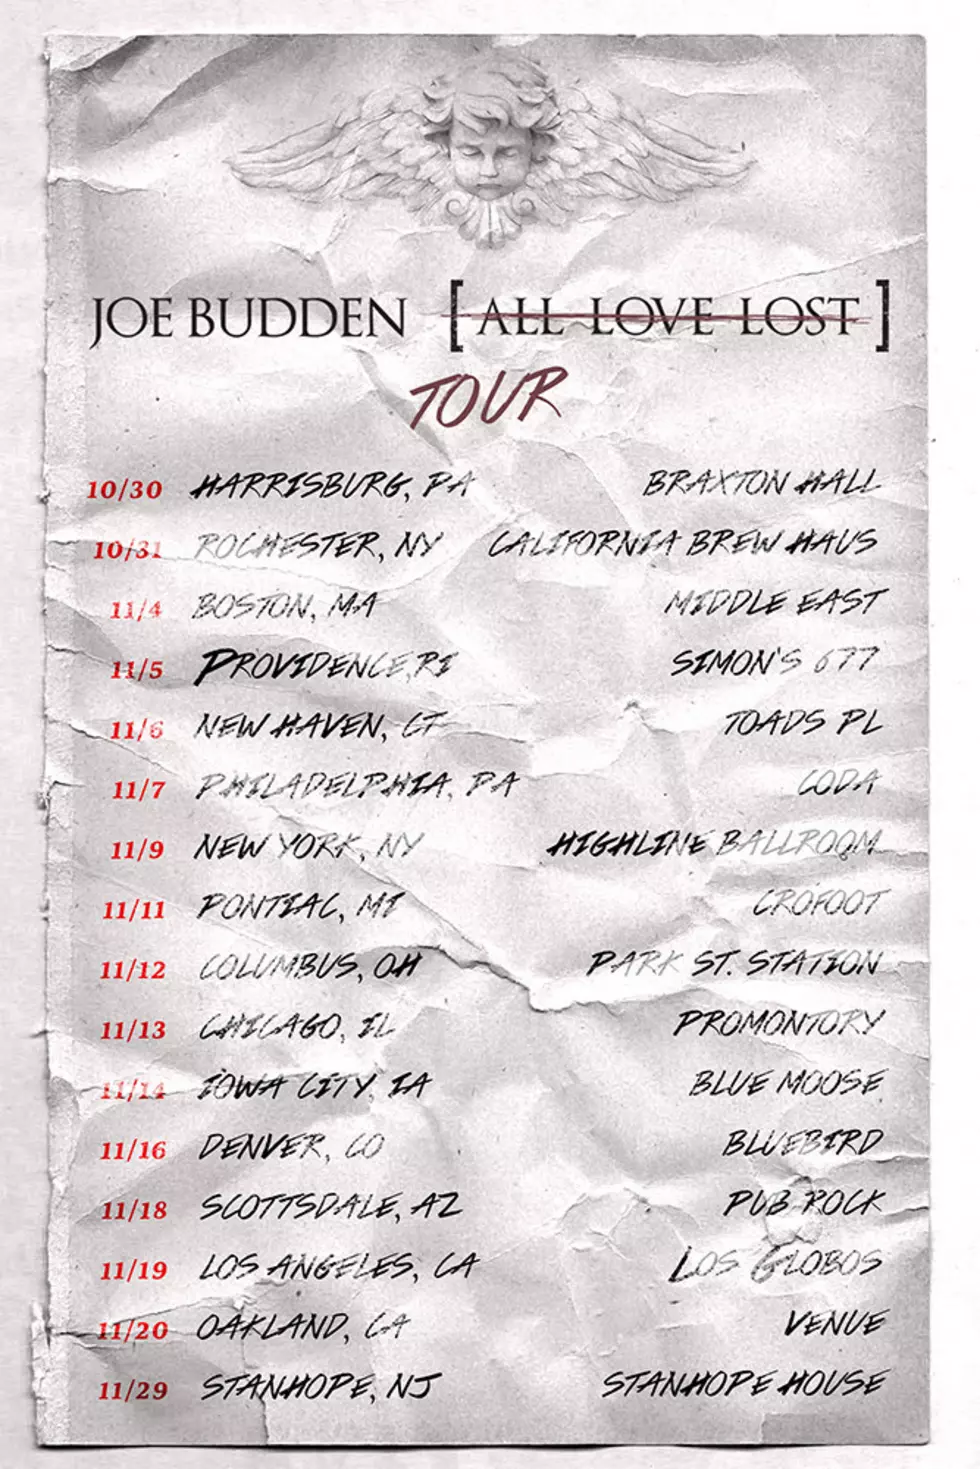 Joe Budden Is Going on Tour